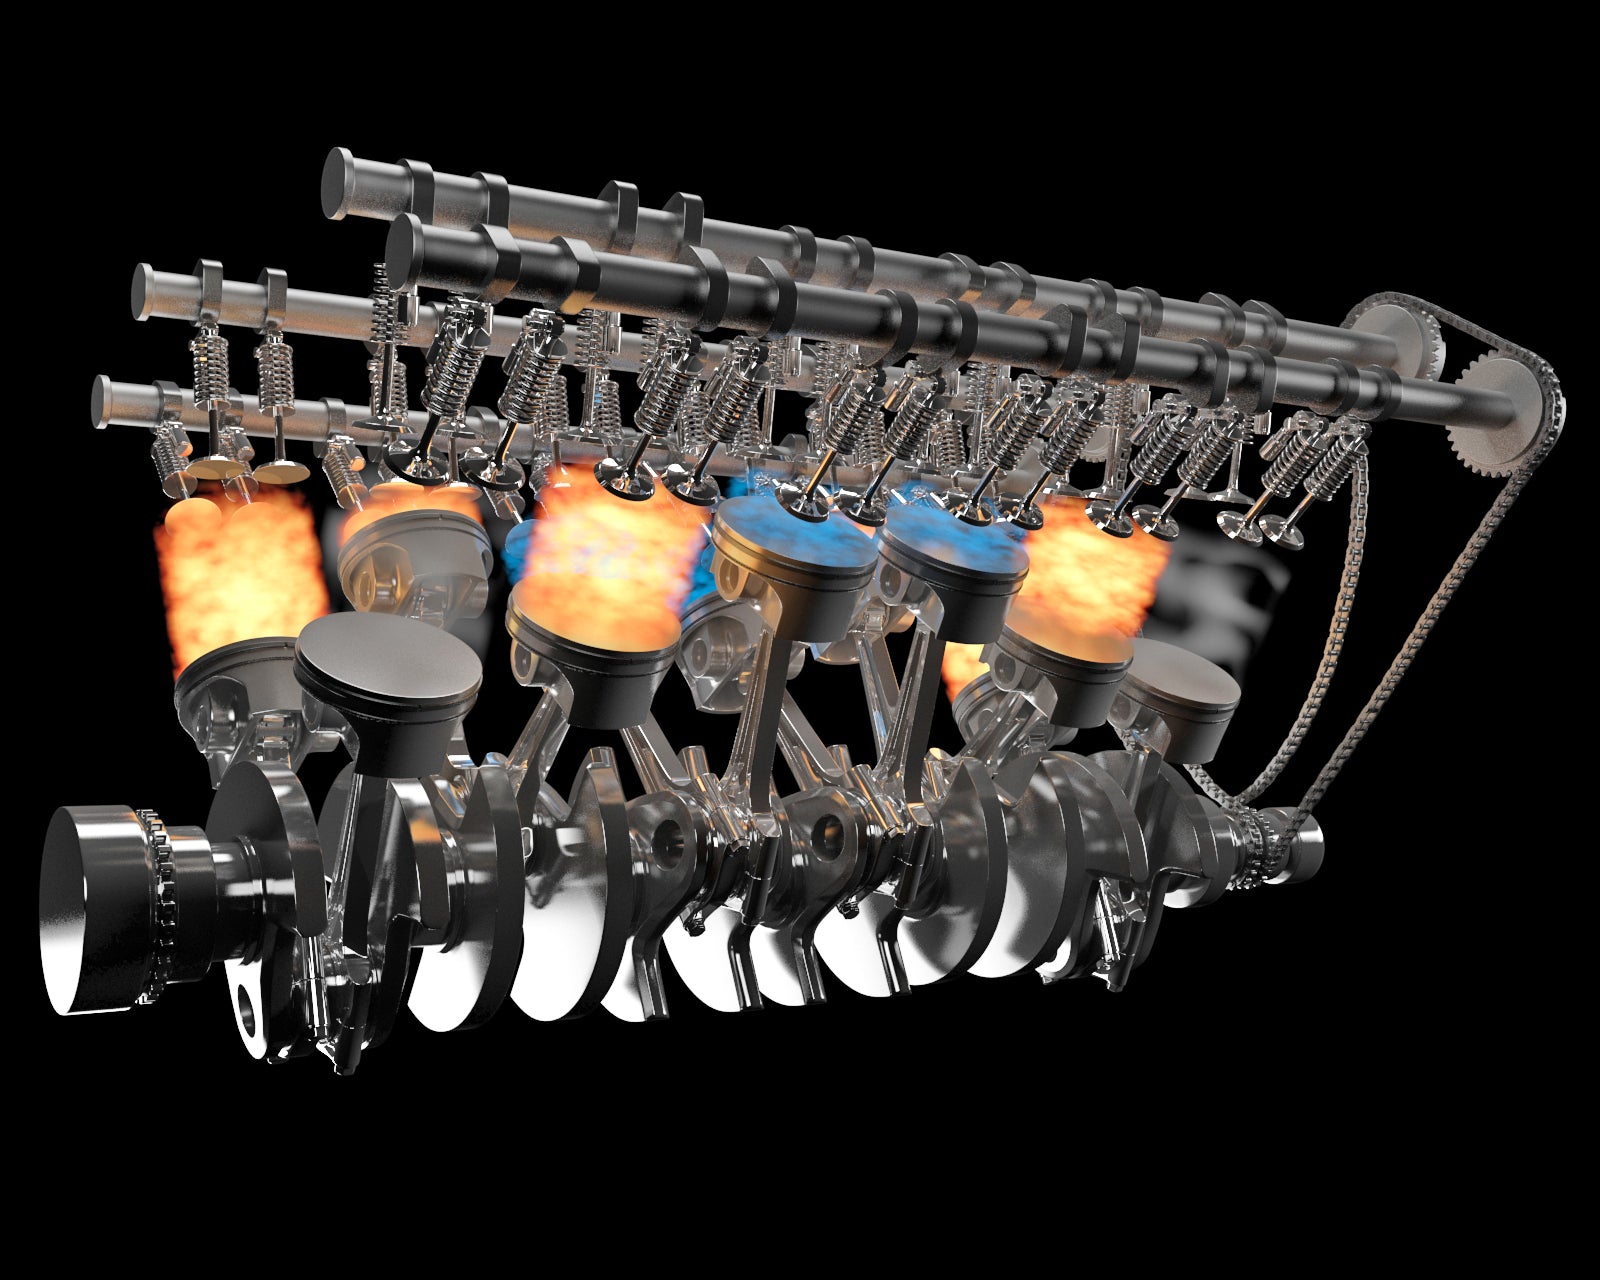 Animated V12 Engine